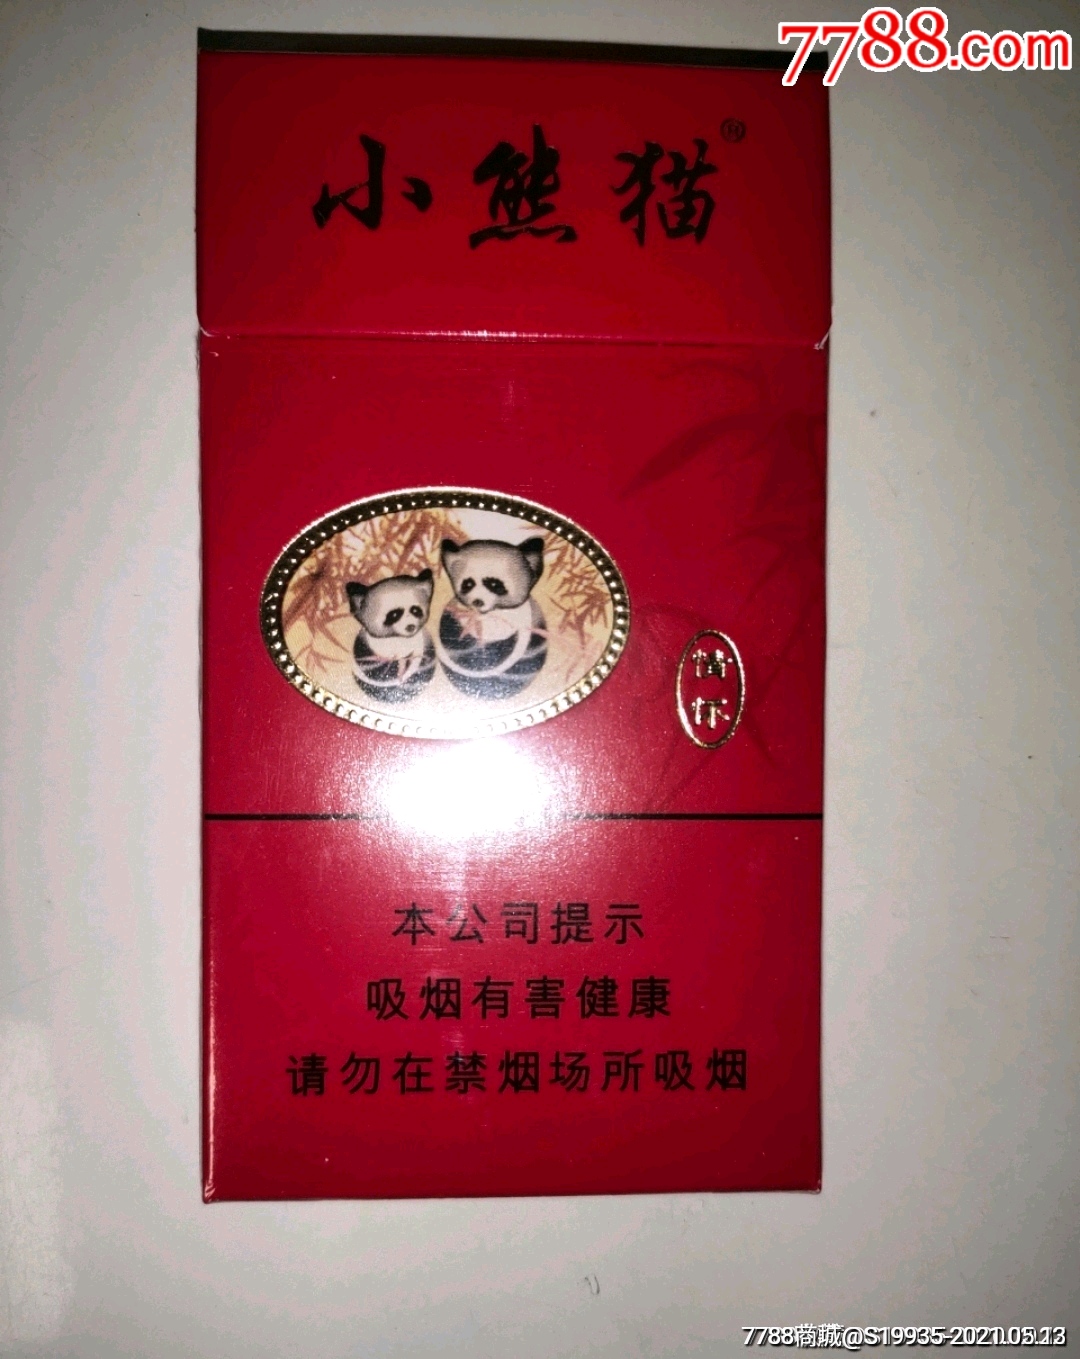 100元的小熊猫香烟图片